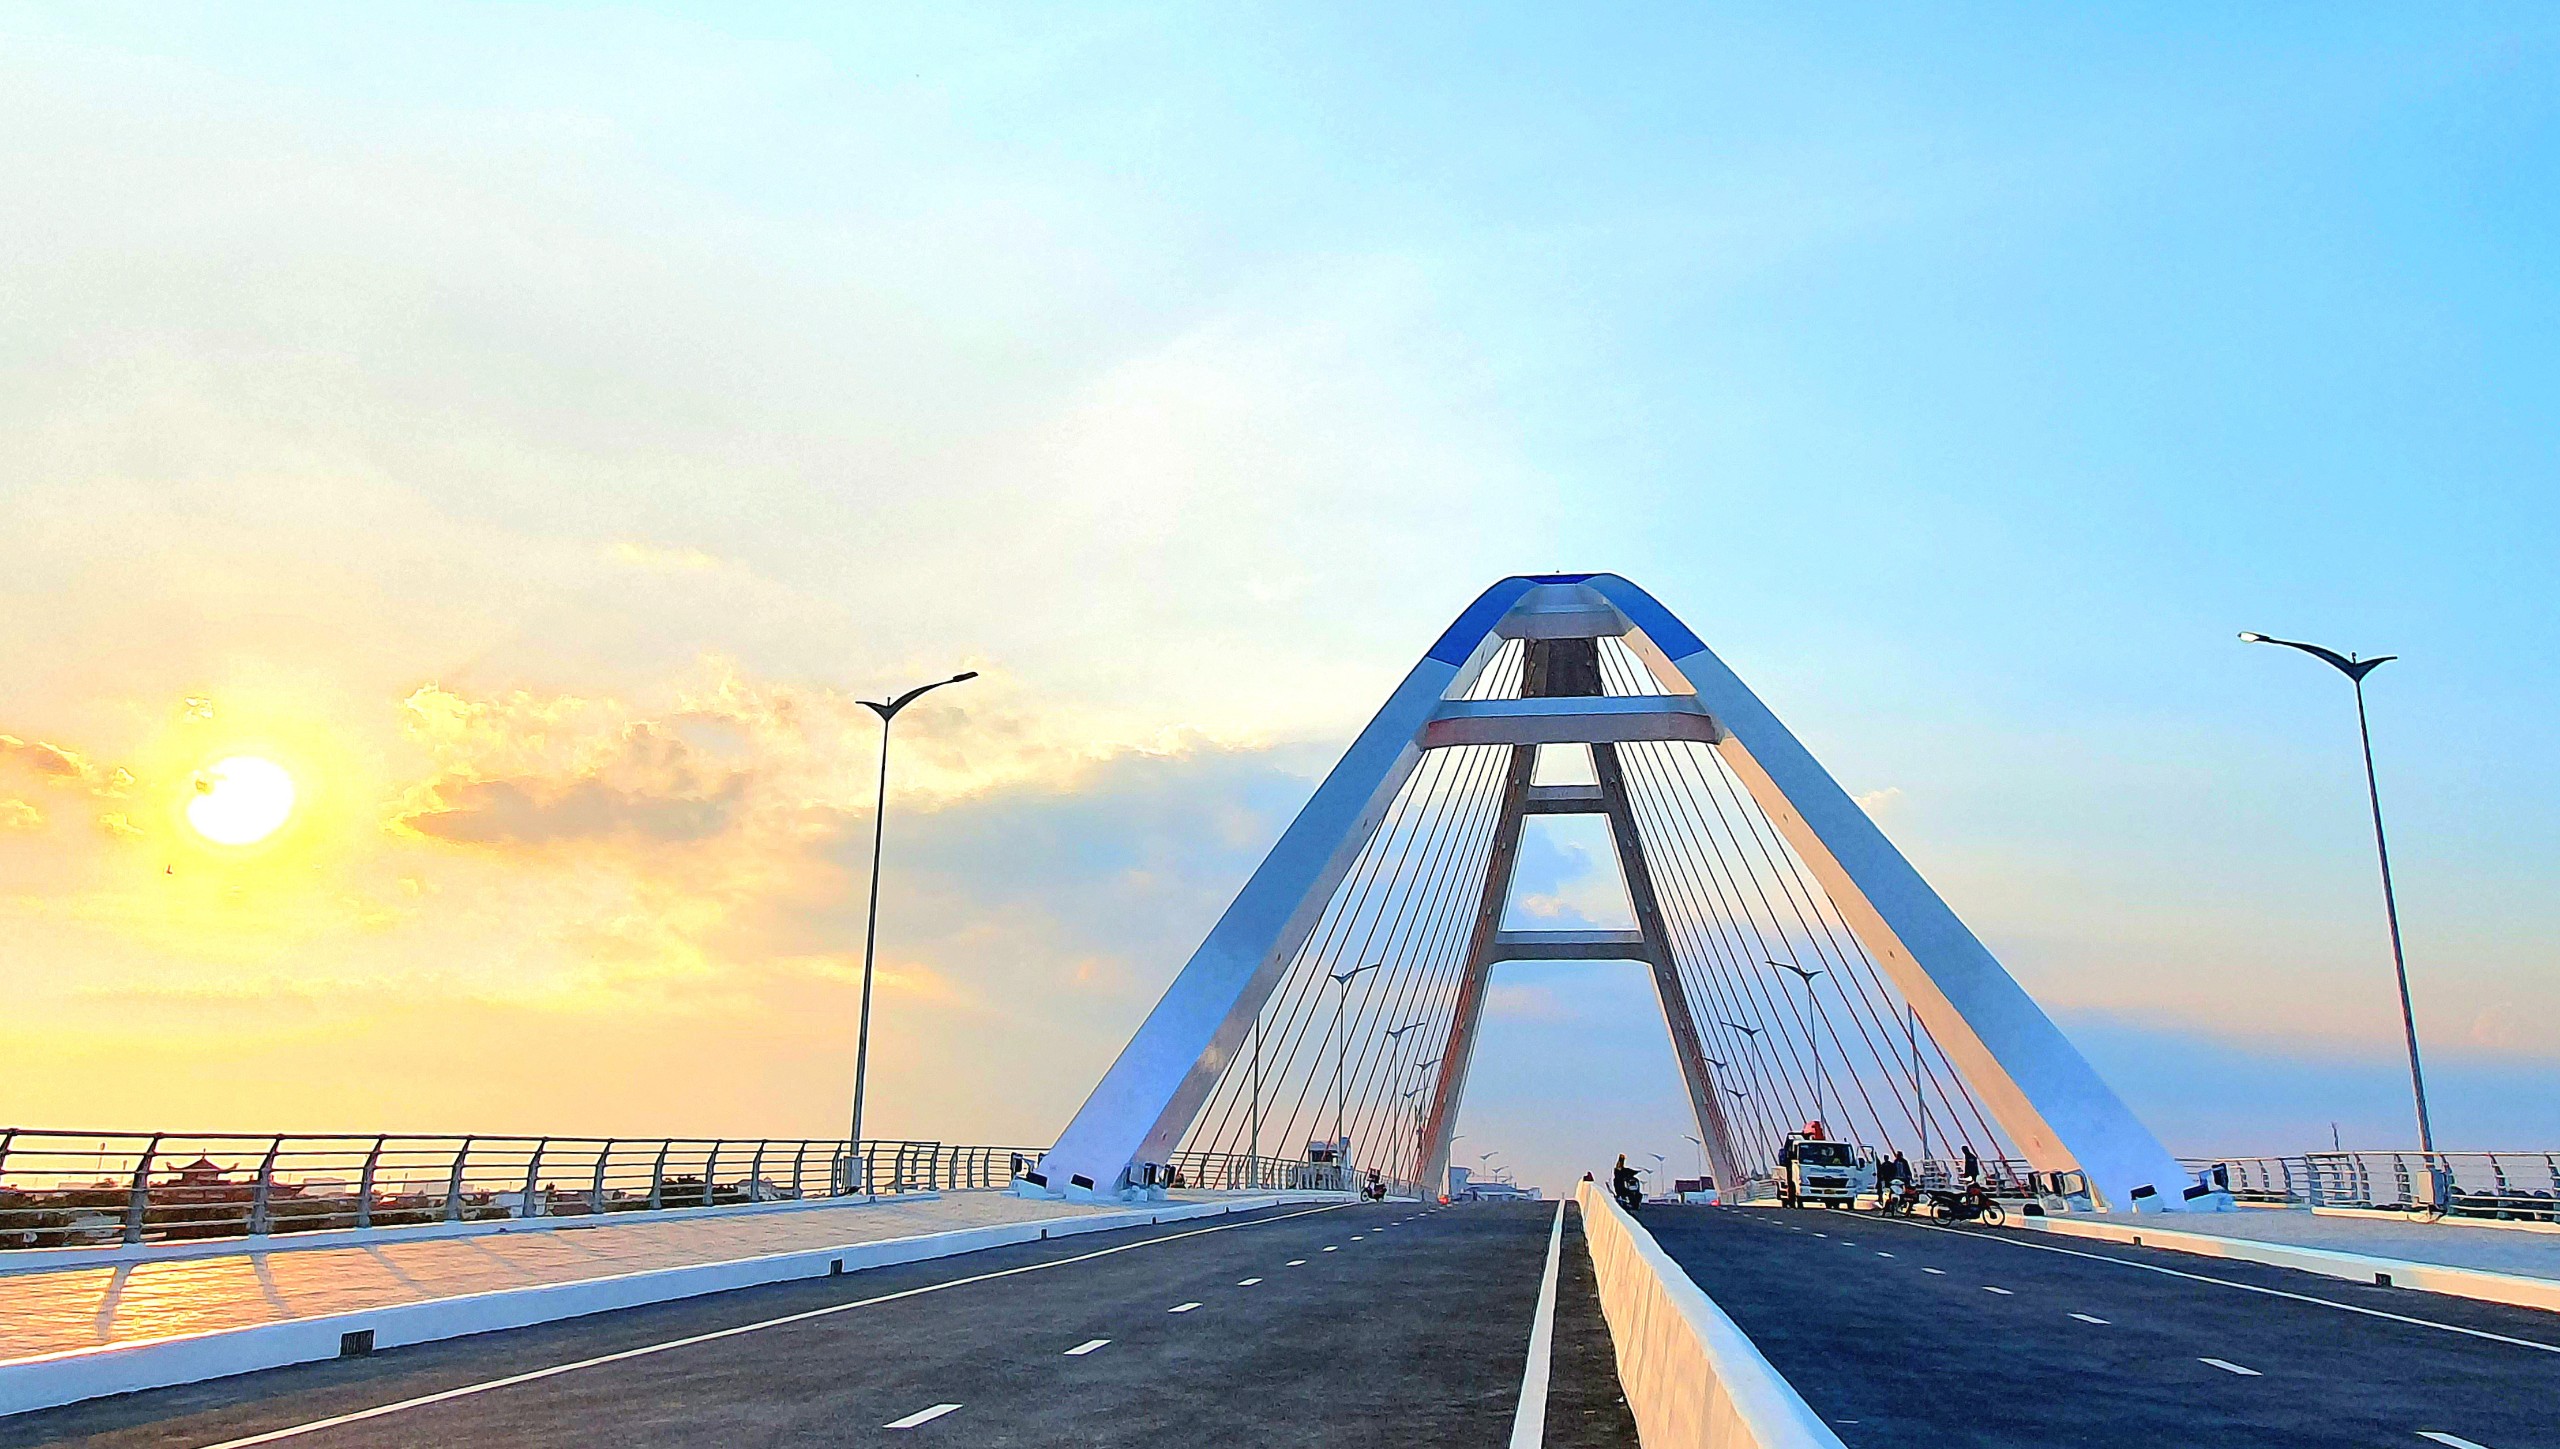 Hoàng hôn trên cầu Trần Hoàng Na bắc qua sông Cần Thơ, nối trung tâm TP (thuộc quận Ninh Kiều) với các khu đô thị phía Nam và tuyến quốc lộ 1A (thuộc quận Cái Răng).